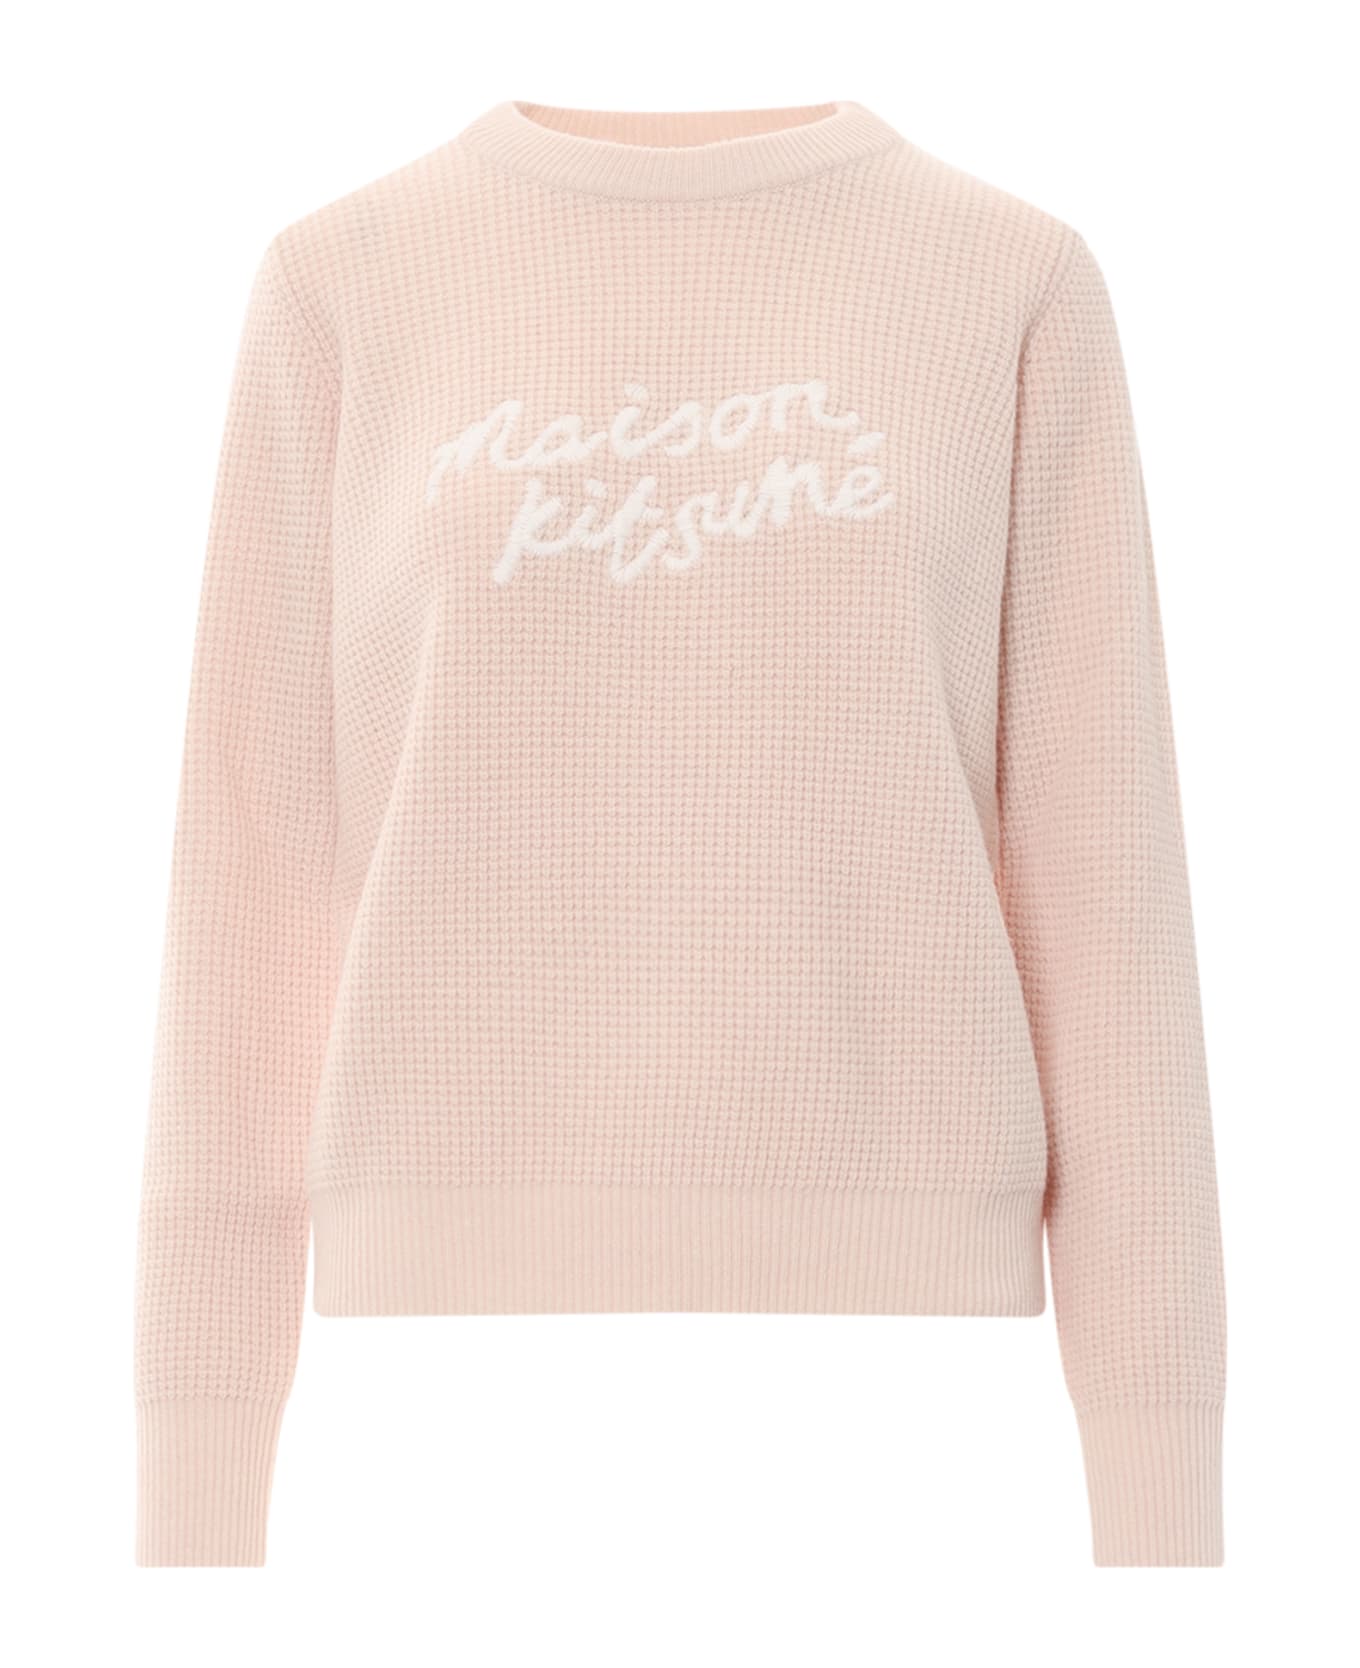 Maison Kitsuné Sweater - Pink